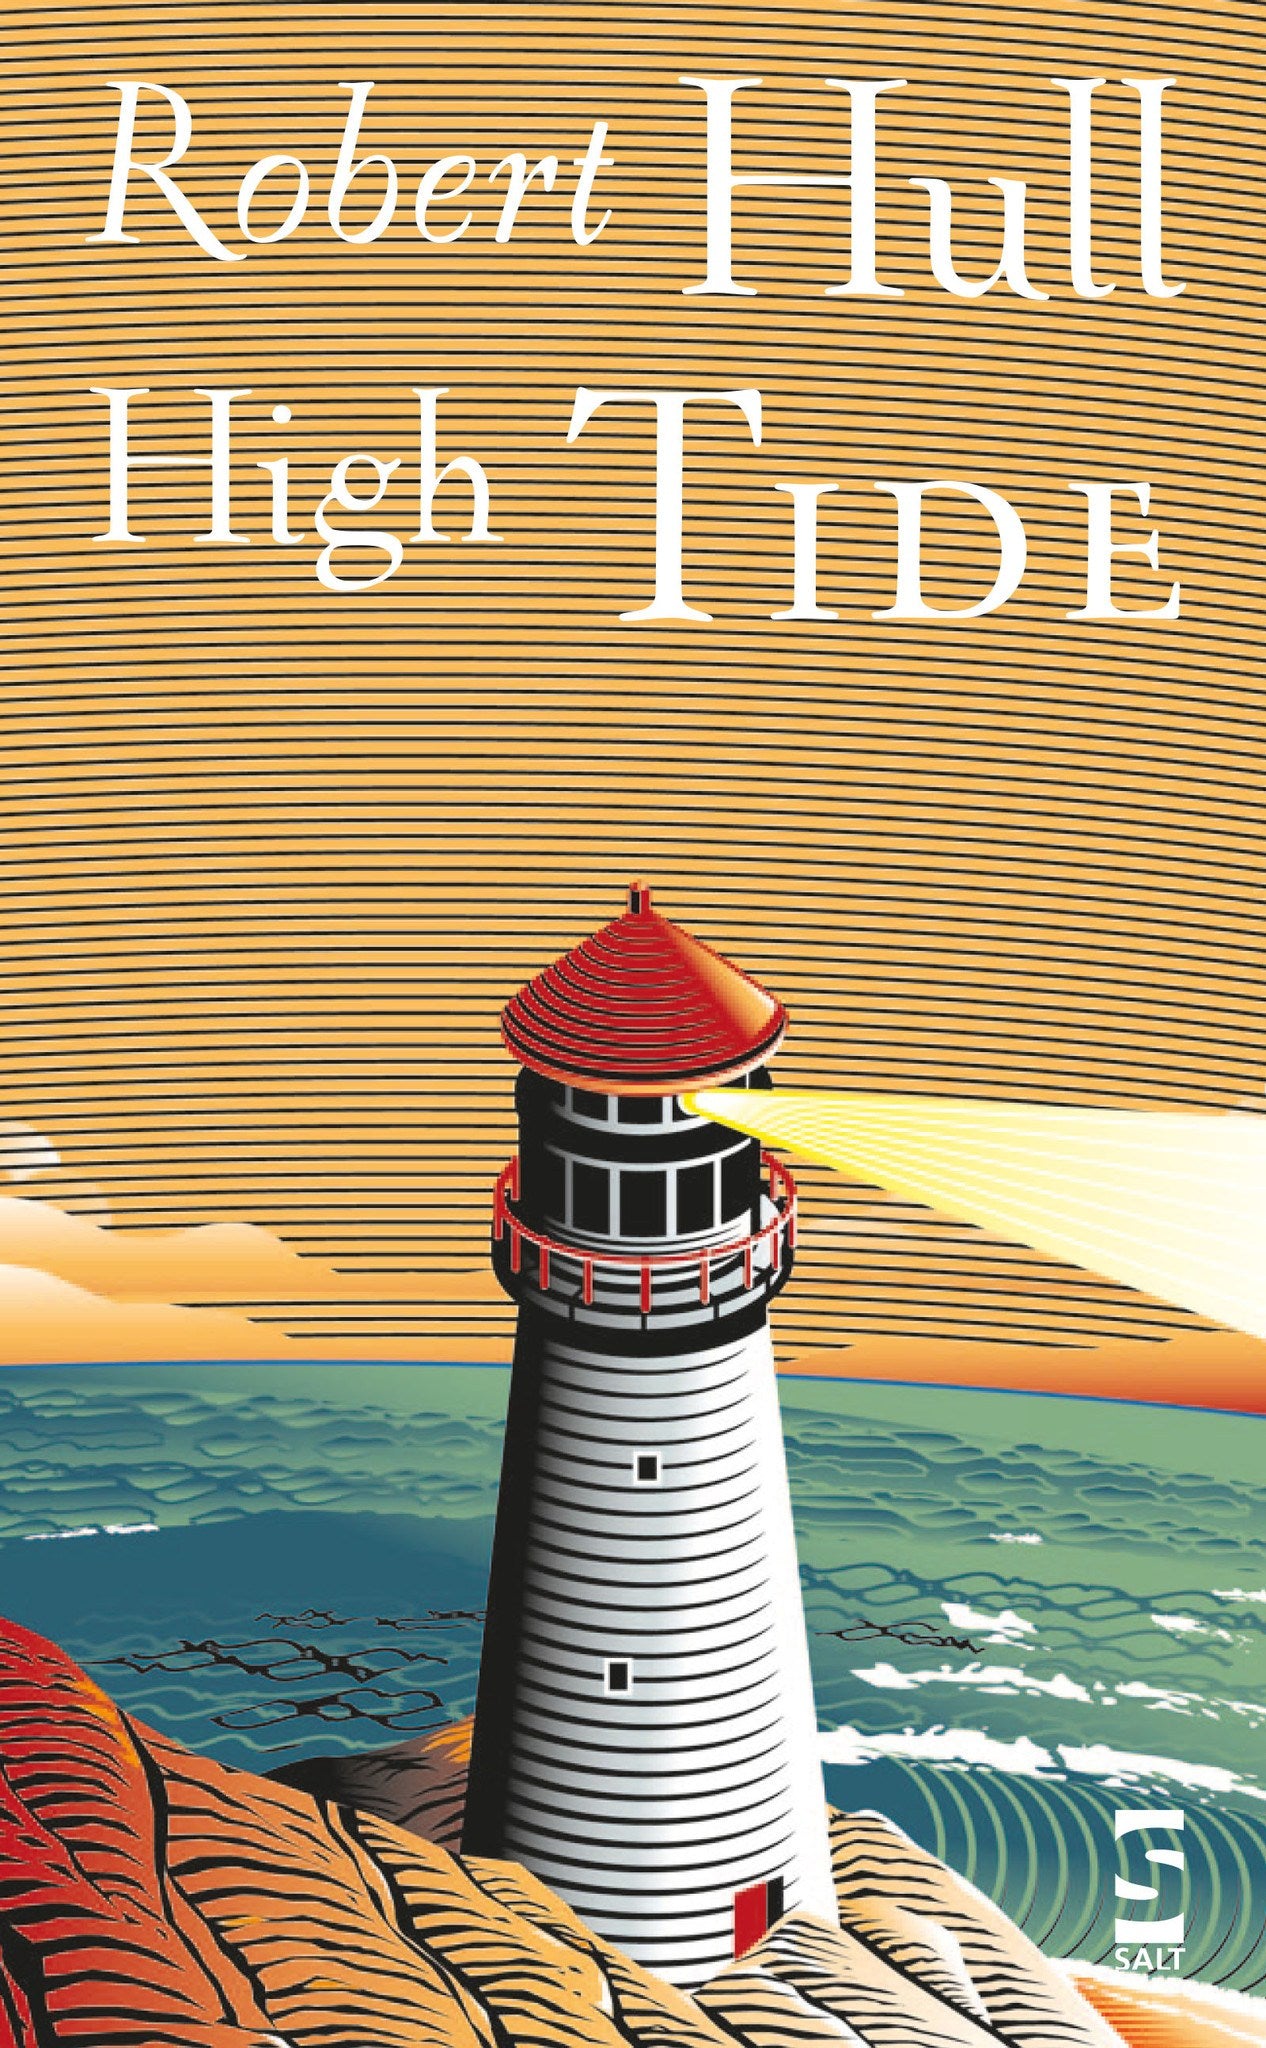 High Tide - Salt